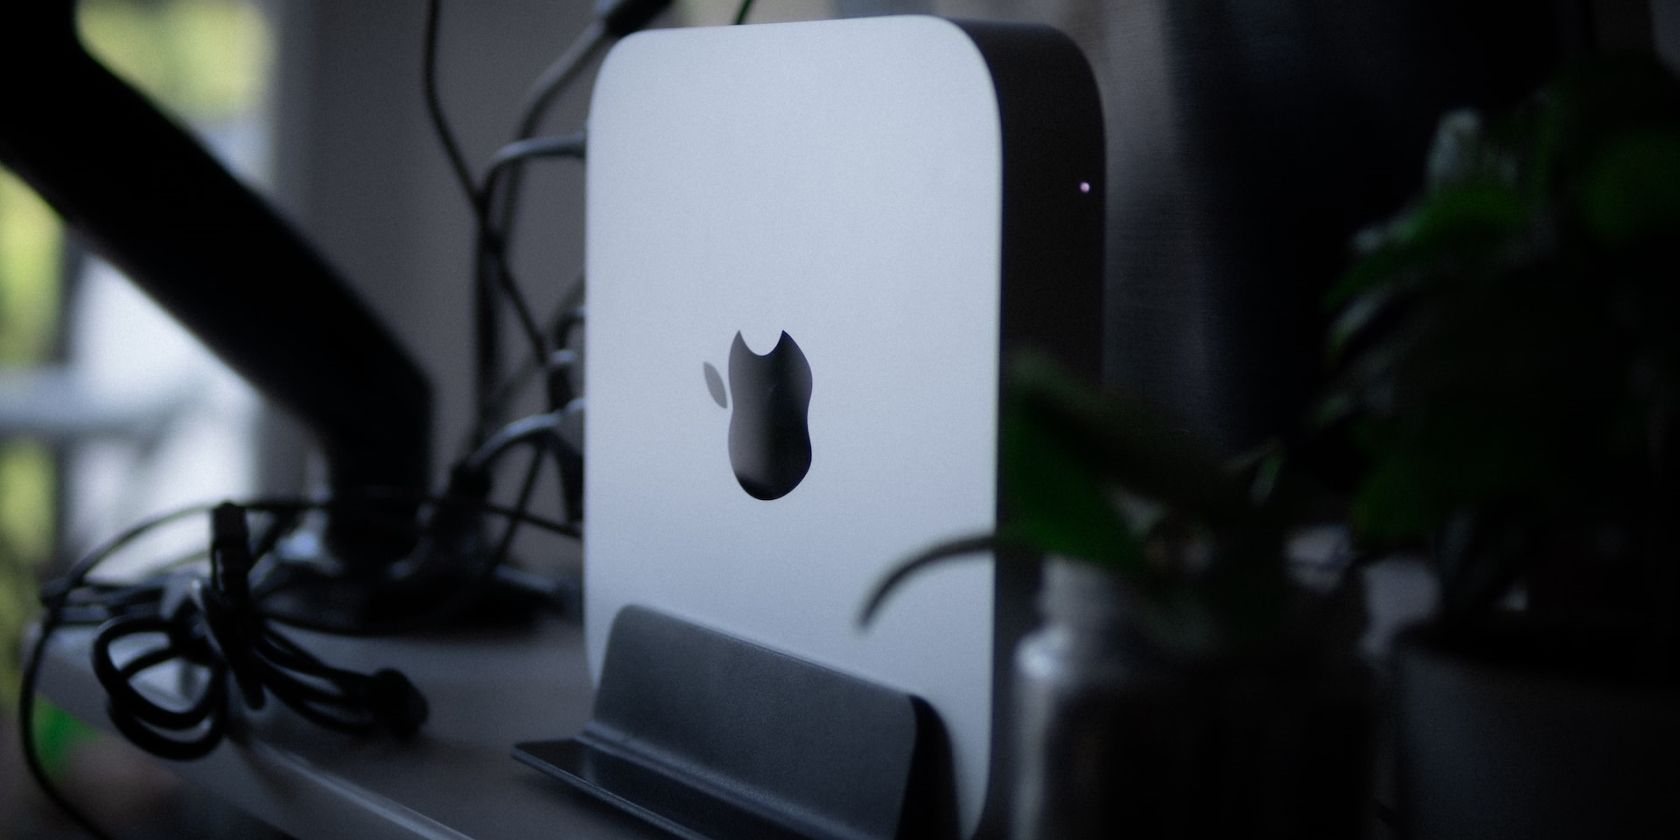 Mac mini on a desk